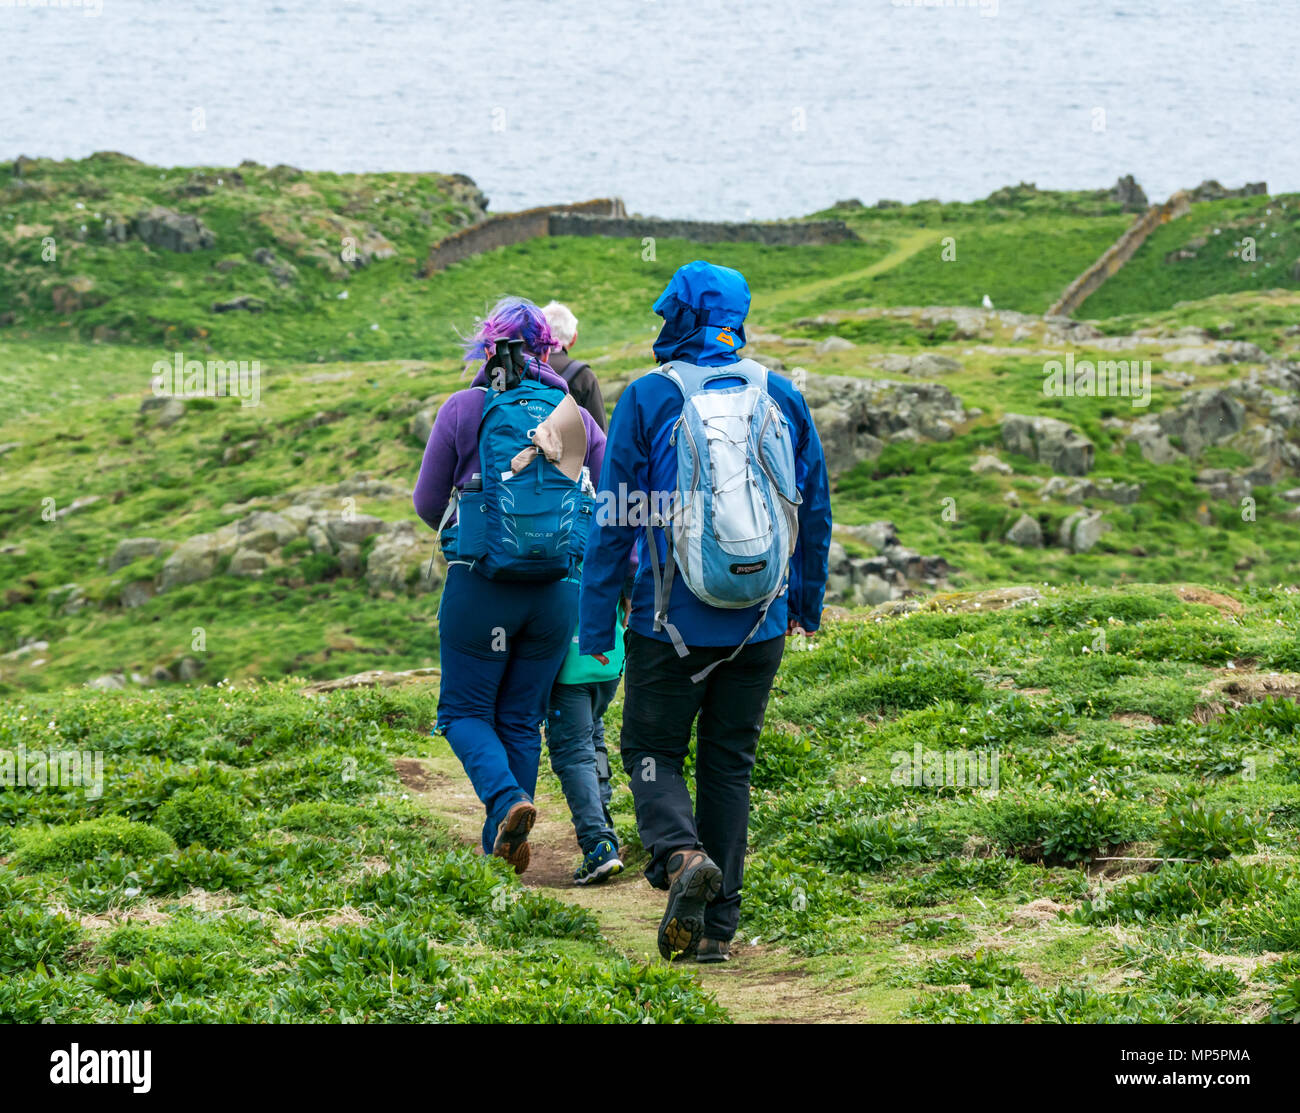 Drei Generationen der Familie laufen auf Gras weg, Insel, Scottish Natural Heritage Naturschutzgebiet, Schottland, Großbritannien Stockfoto